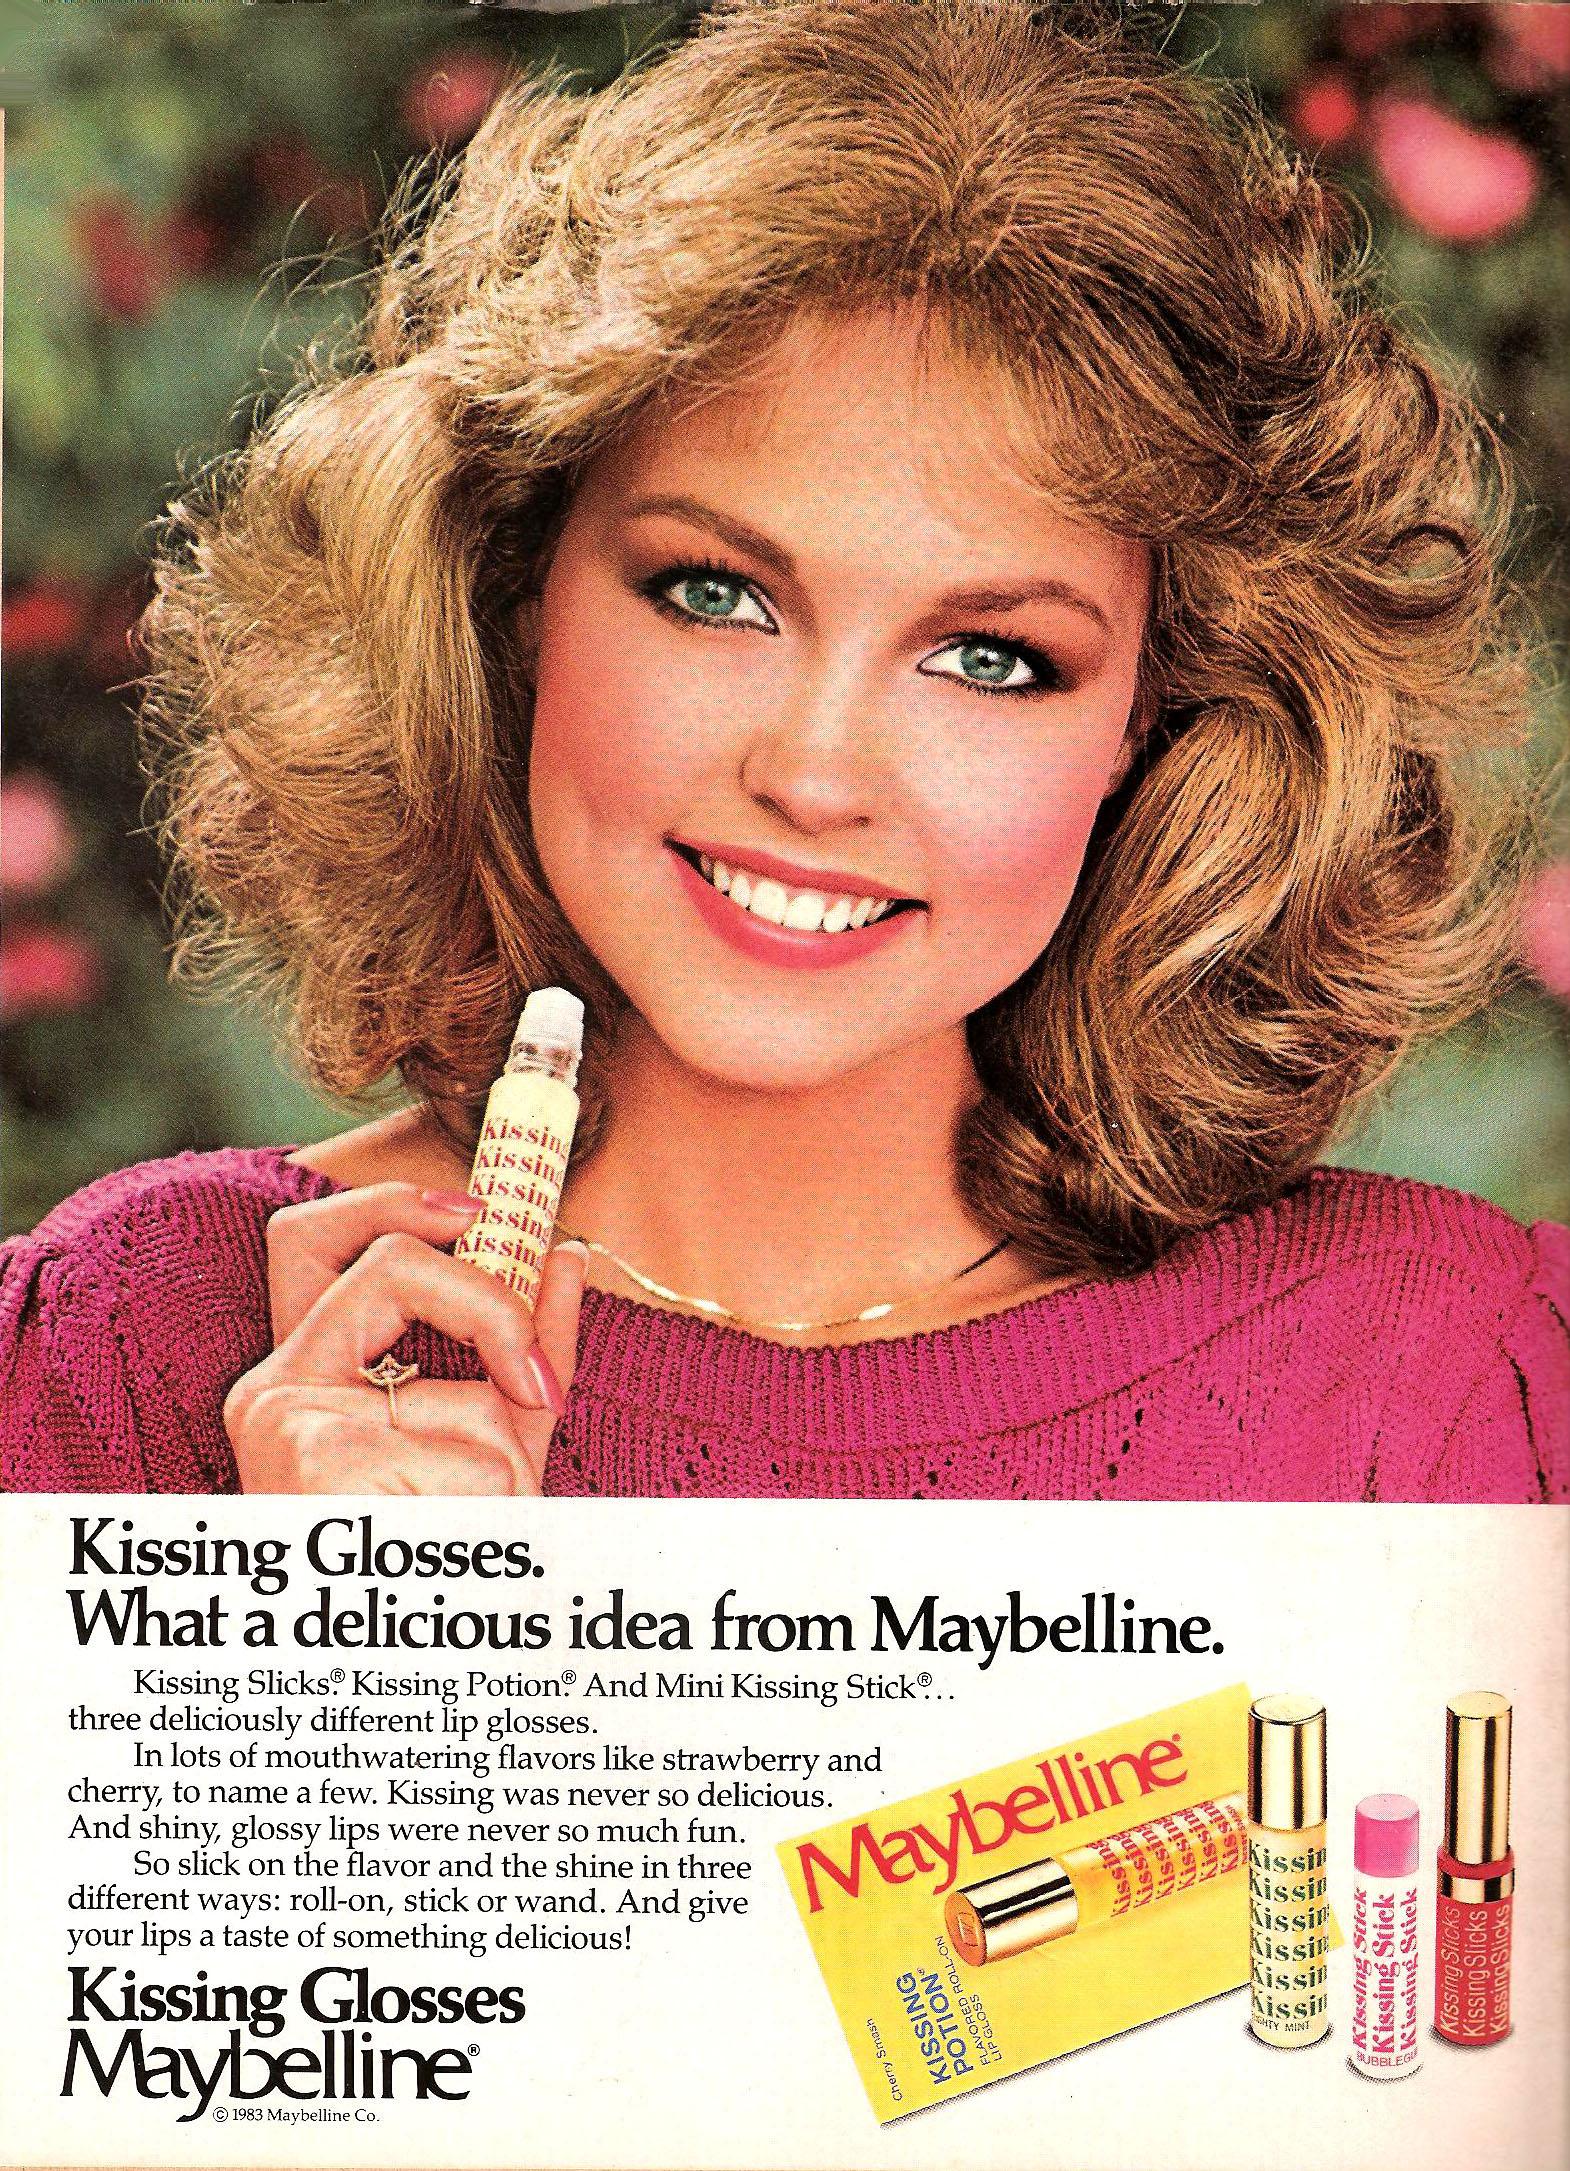 Haut-Brillant Rose et Chaude: le rouge à Lèvres Annonces dans les années 1960-années 1980